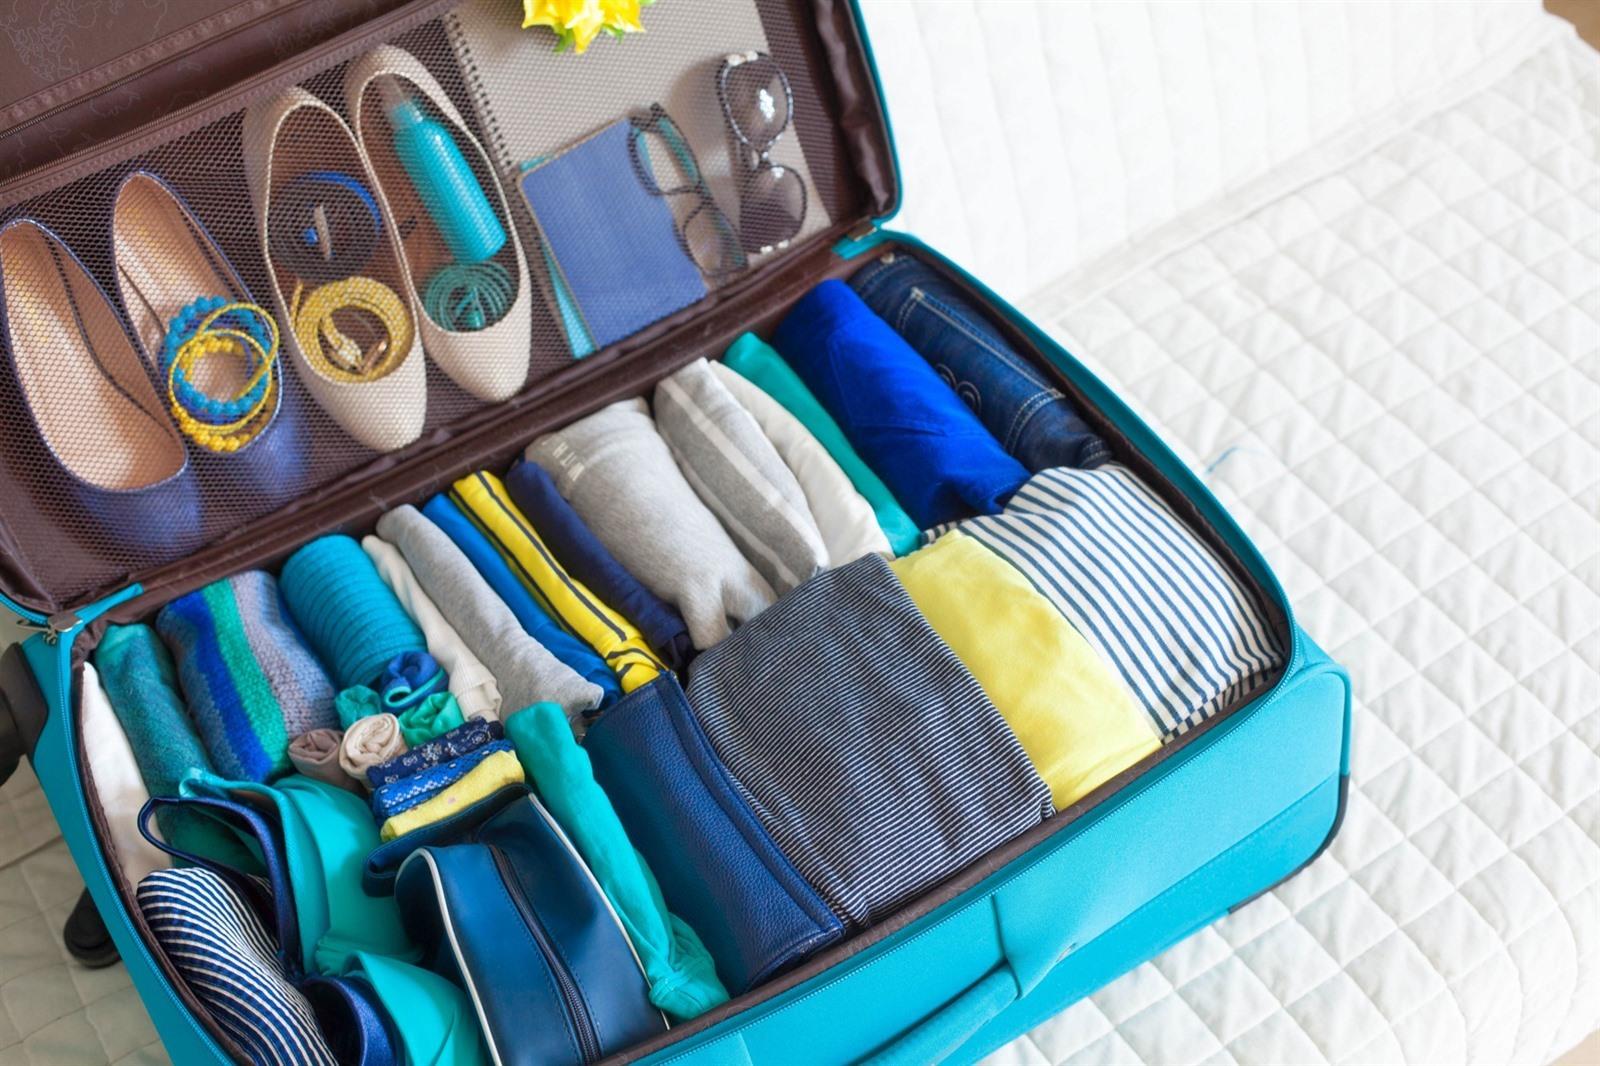 Mos idee Adelaide Met handbagage vliegen? 20 x inpaktips: hoe krijg je er meer in?